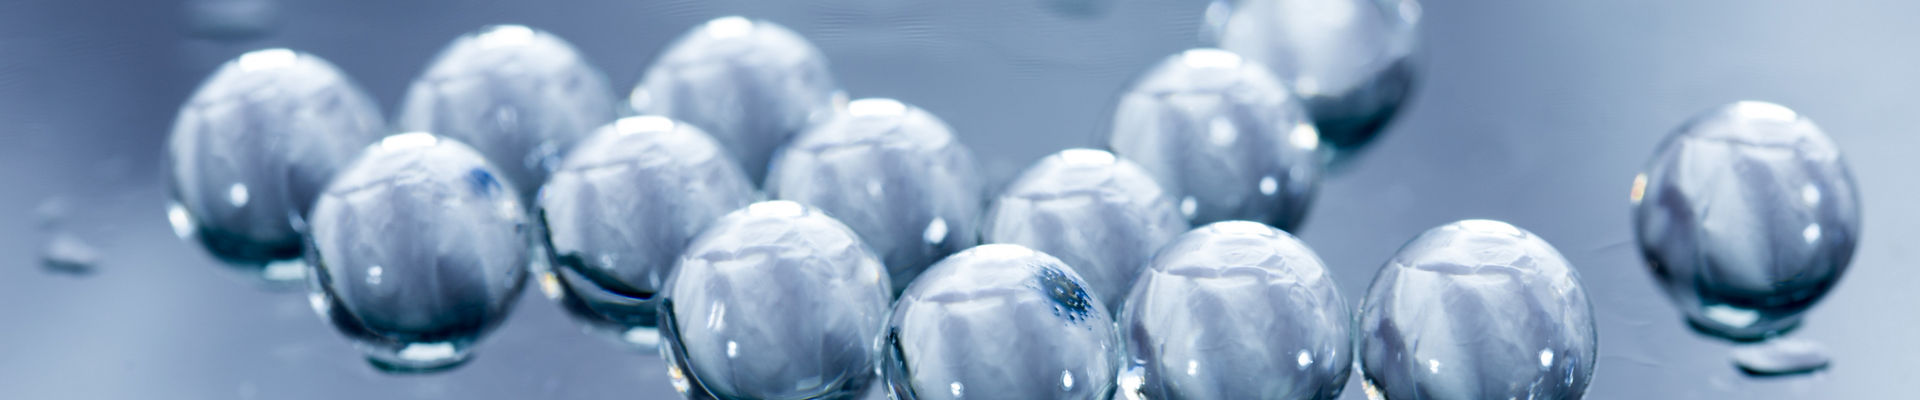 Balls of hydrogel